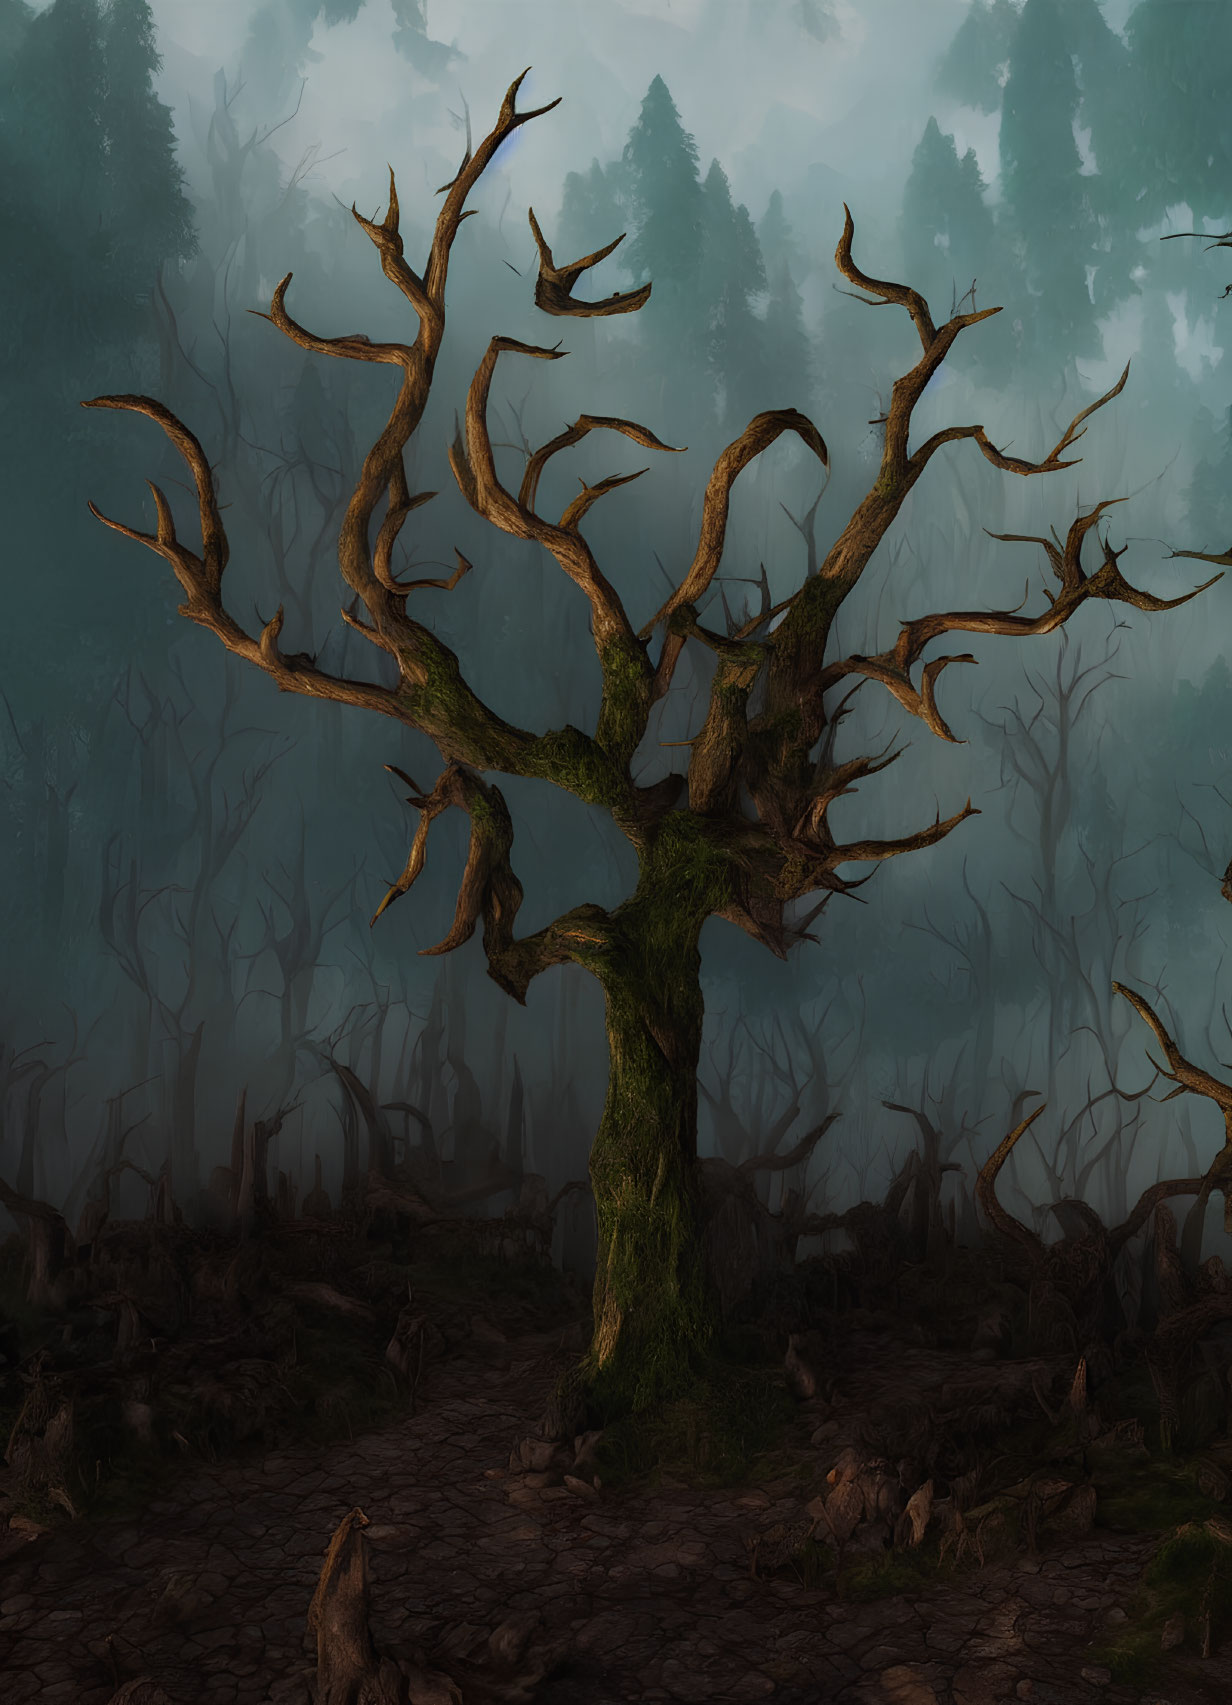 Eerie leafless tree in misty forest landscape